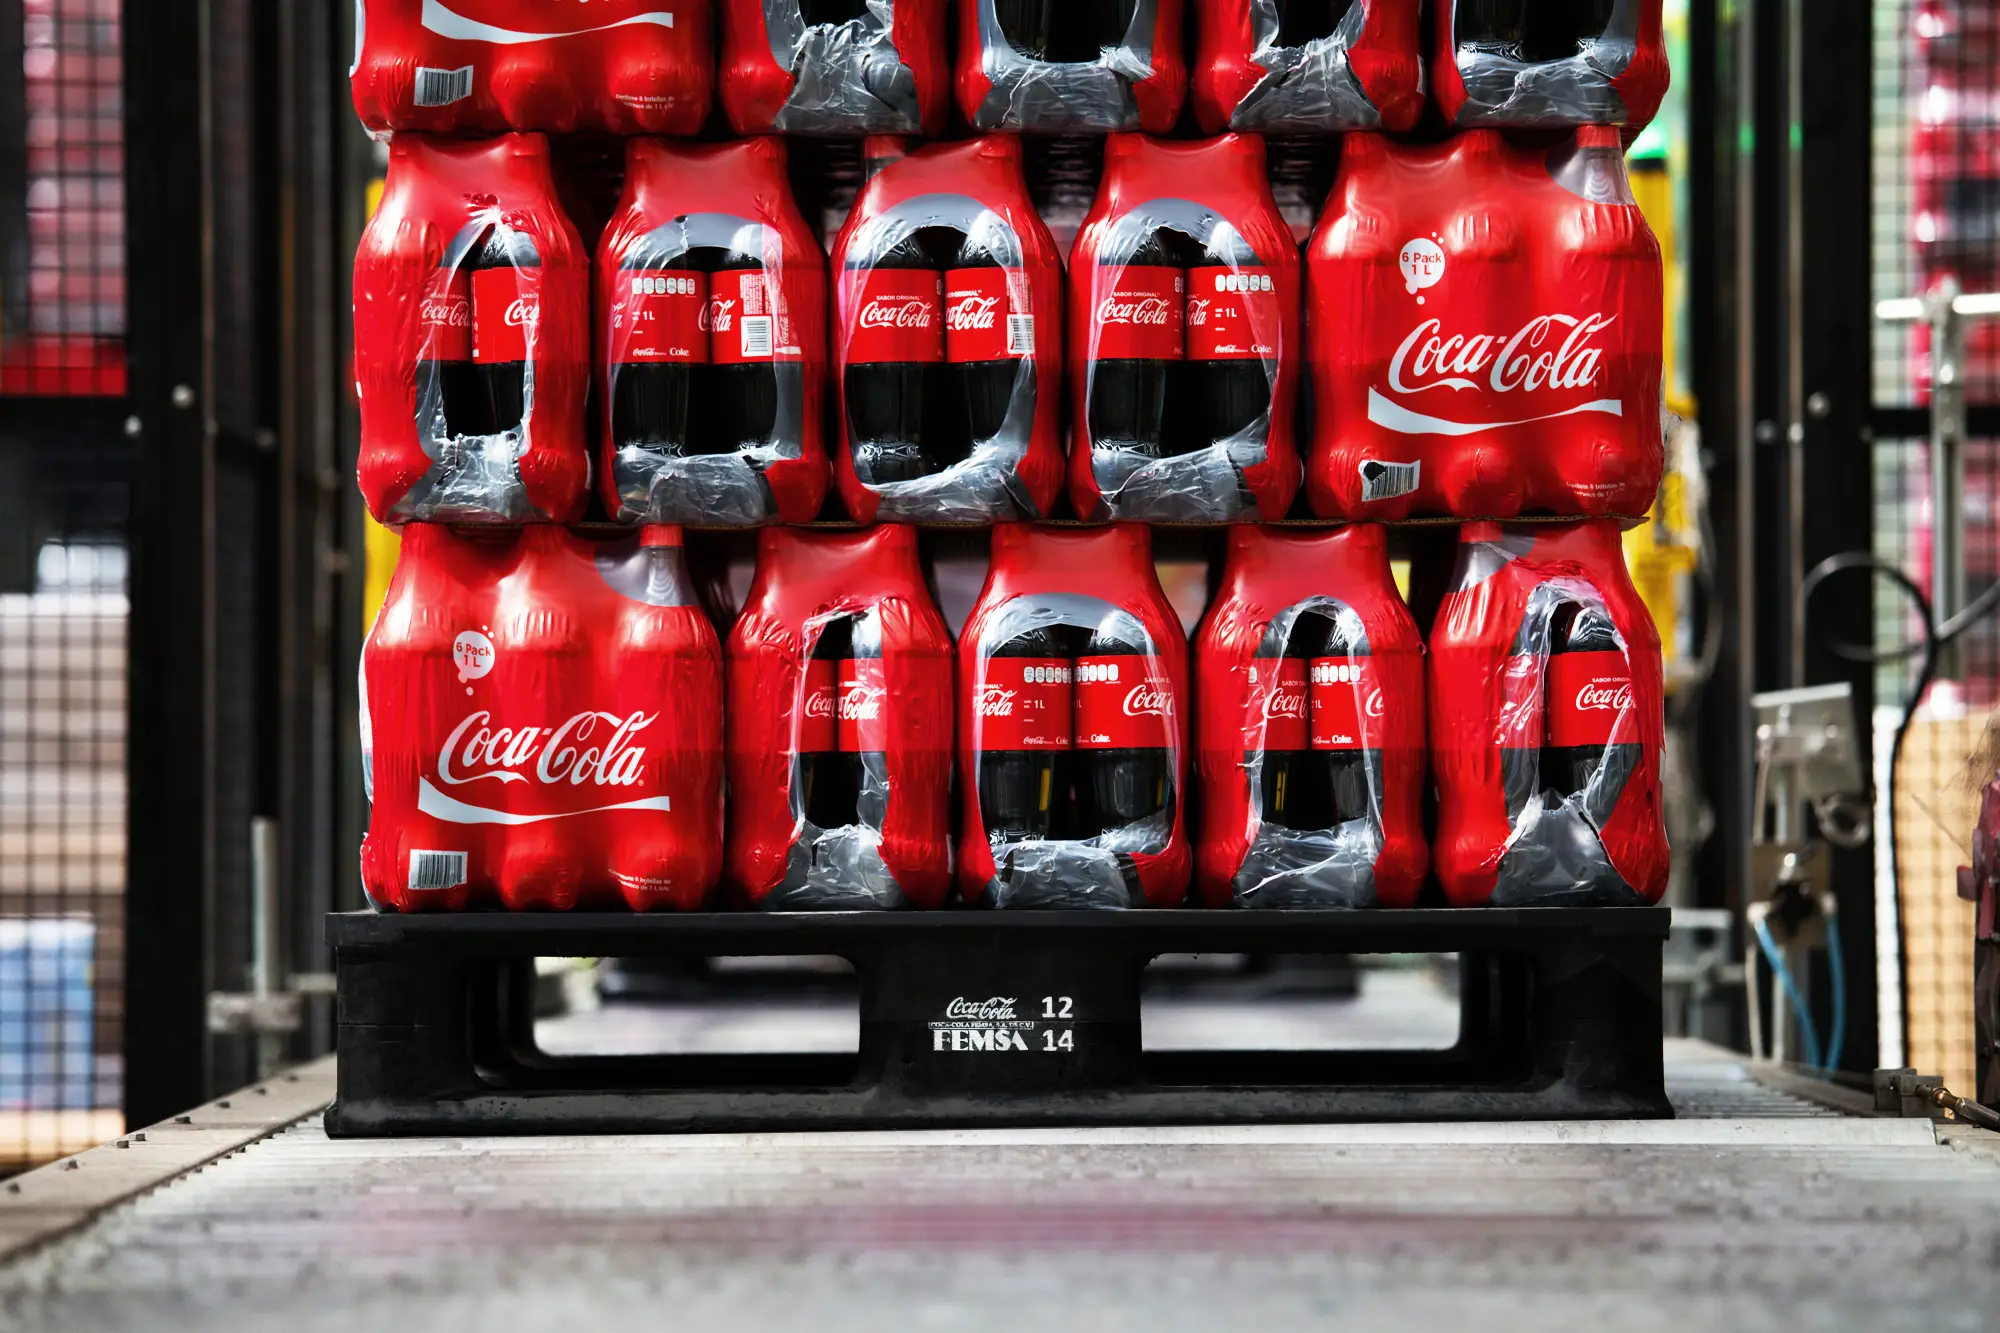 Coca-Cola FEMSA, innovación en la elaboración de empaques. - KOF